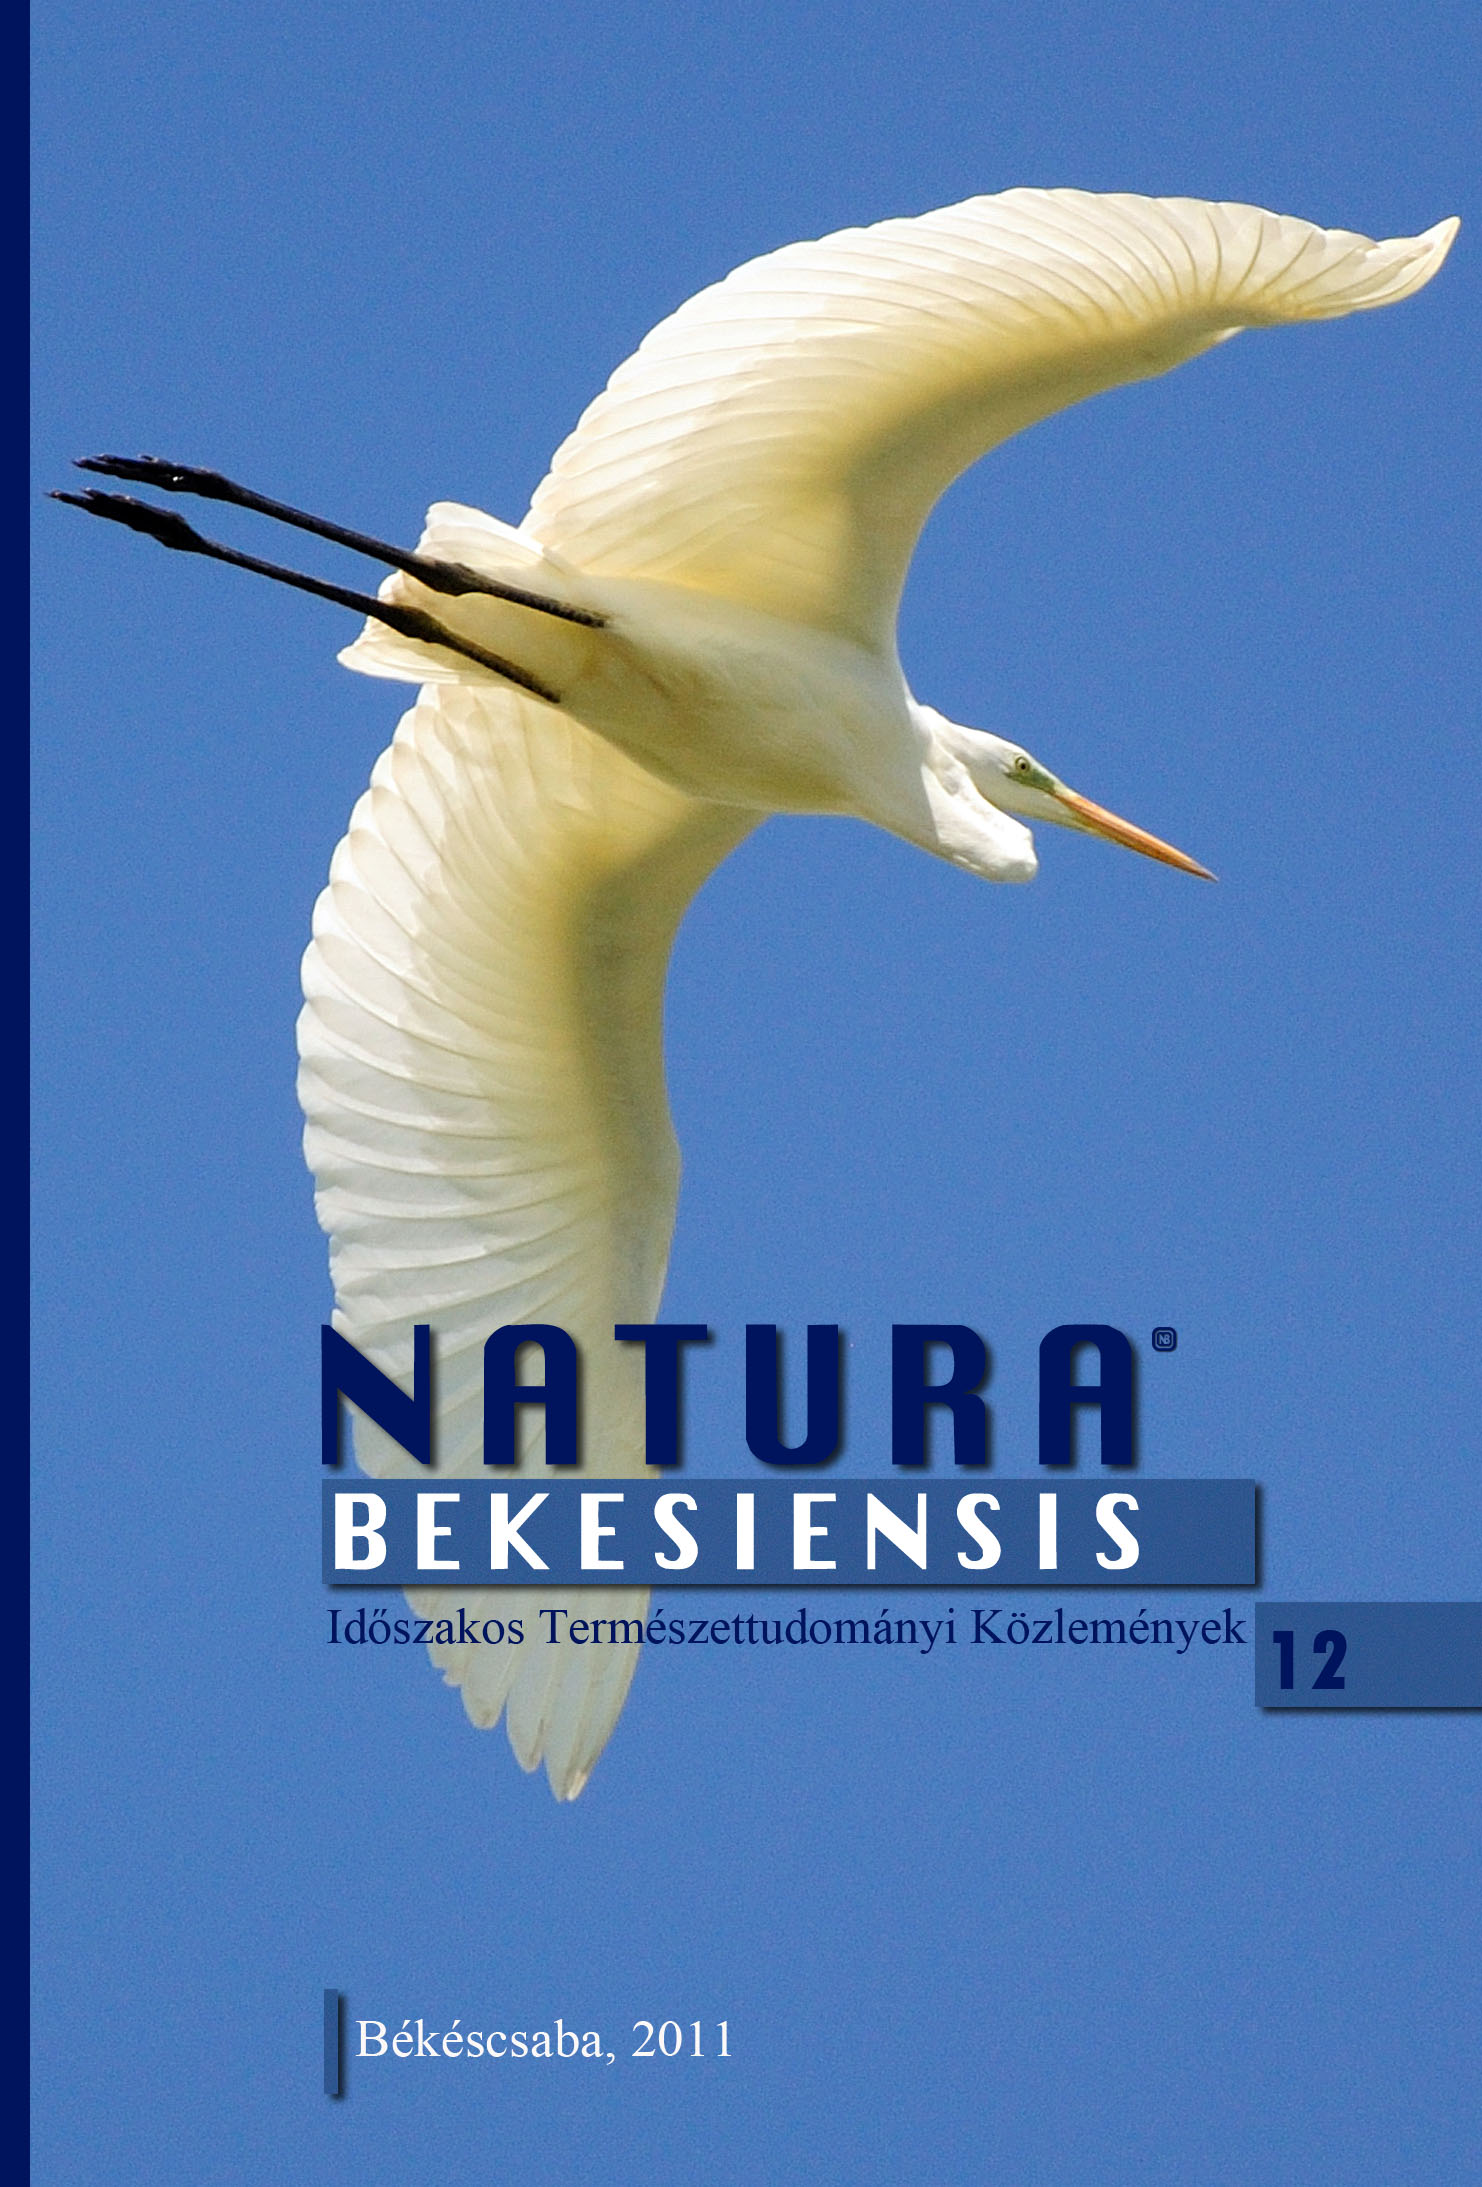 Natura Bekesiensis 12. címlapja (grafikai munka: Batke László)